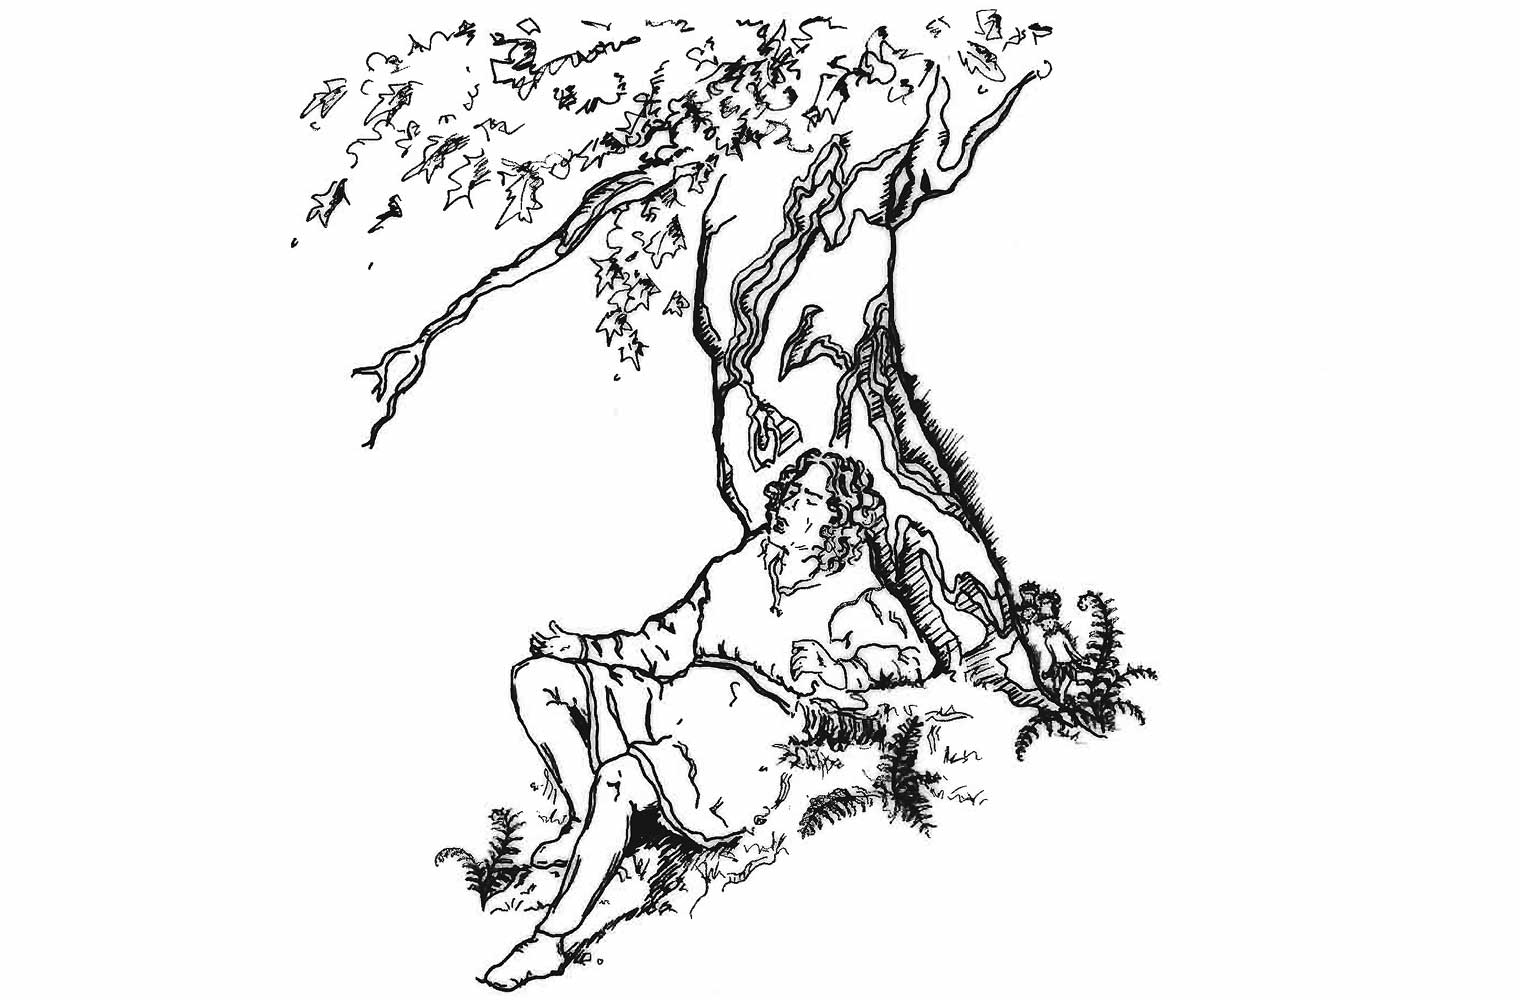 Ein schwarz gemachter Baum vor dem ein Mann mit mittelalterlicher Kleidung liegt. Der Mann hat lange Haare. Am Fuße des Baumes findet man noch vereinzelte Farne. 